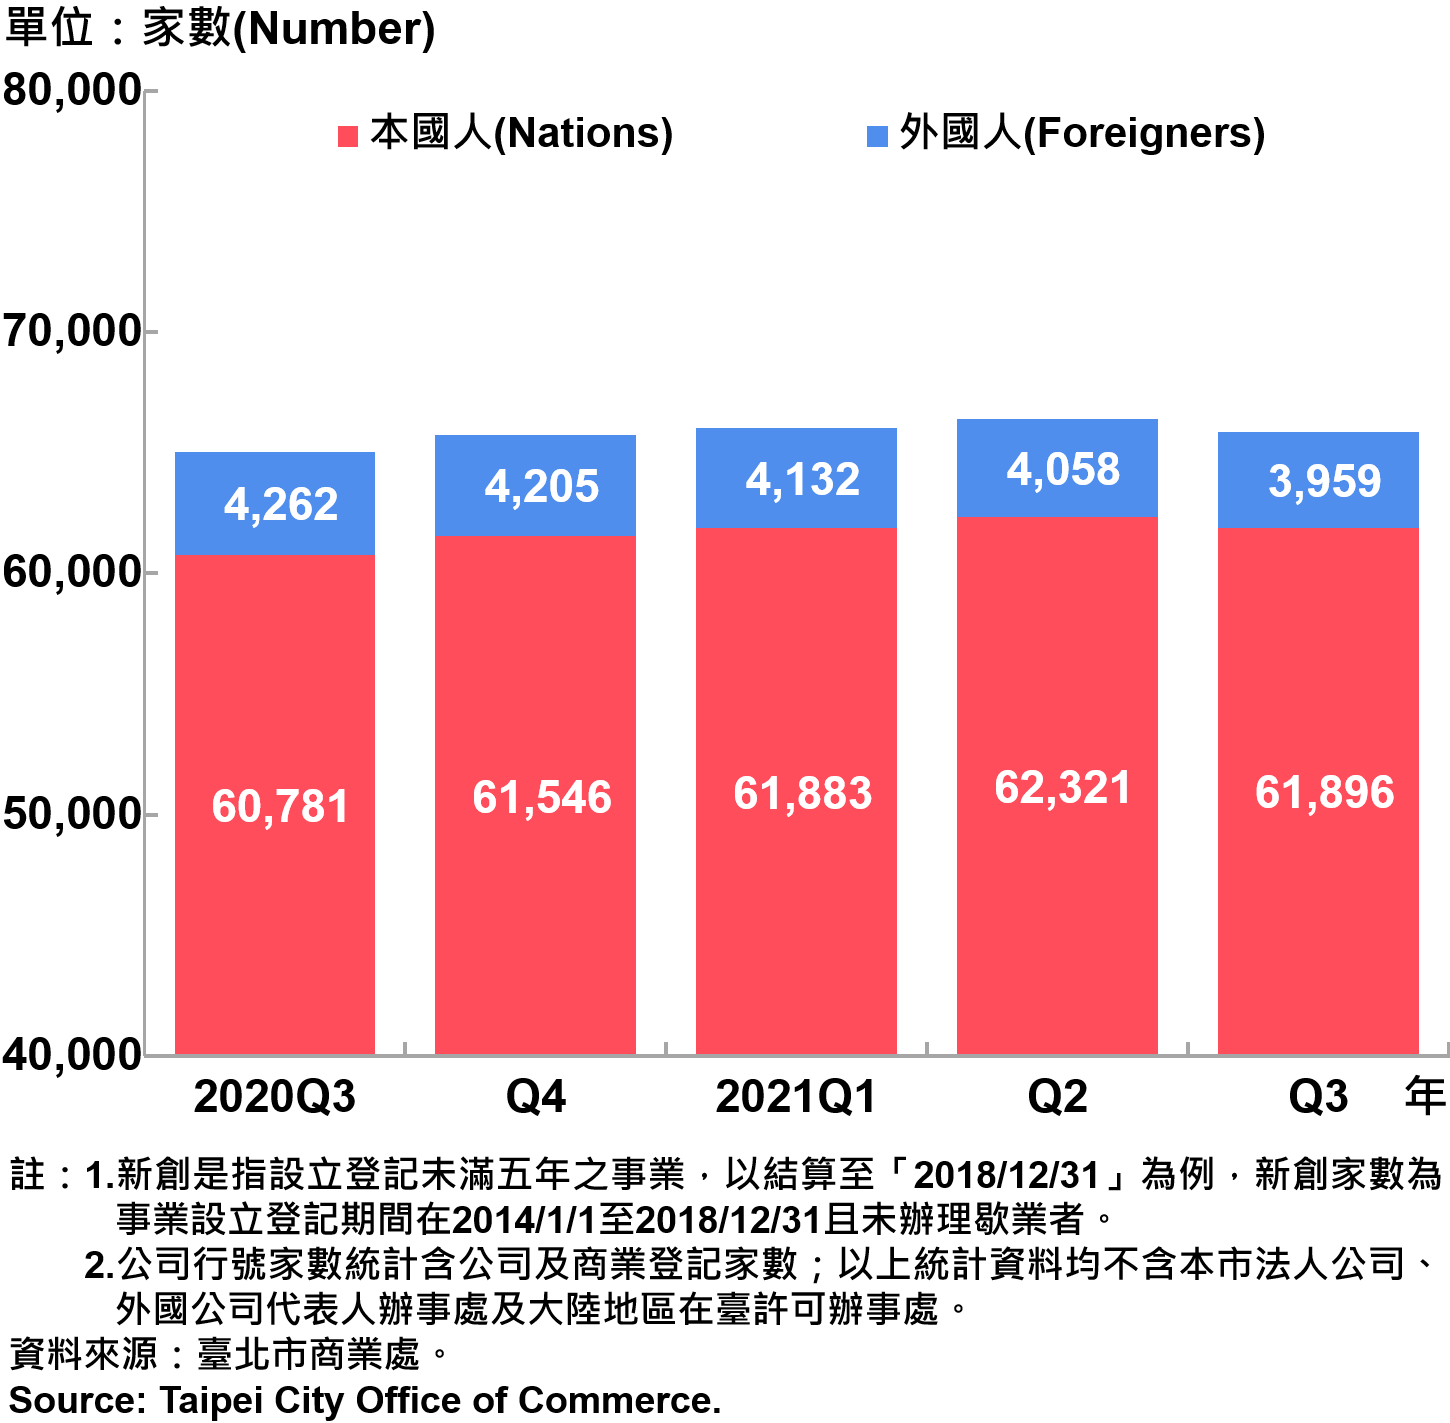 臺北市新創公司行號負責人-本國人與外國人分布情形-現存家數—2021Q3　Responsible Person of Newly Registered Companies In Taipei City by Nationality - Number of Current—2021Q3